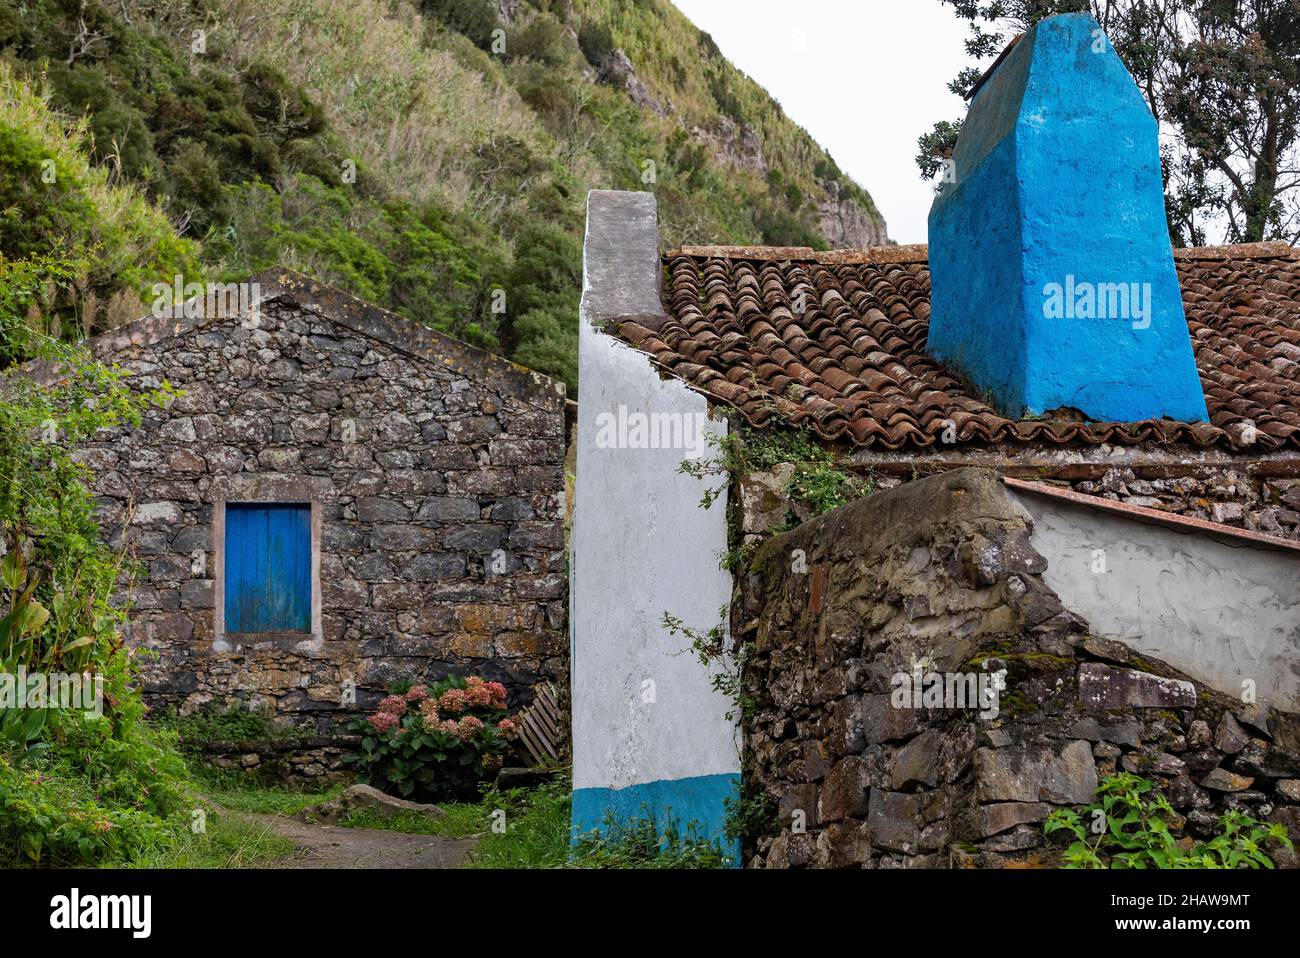 Stone houses in Rocha da Relva, Sao Miguel, Azores, Portugal Stock Photo